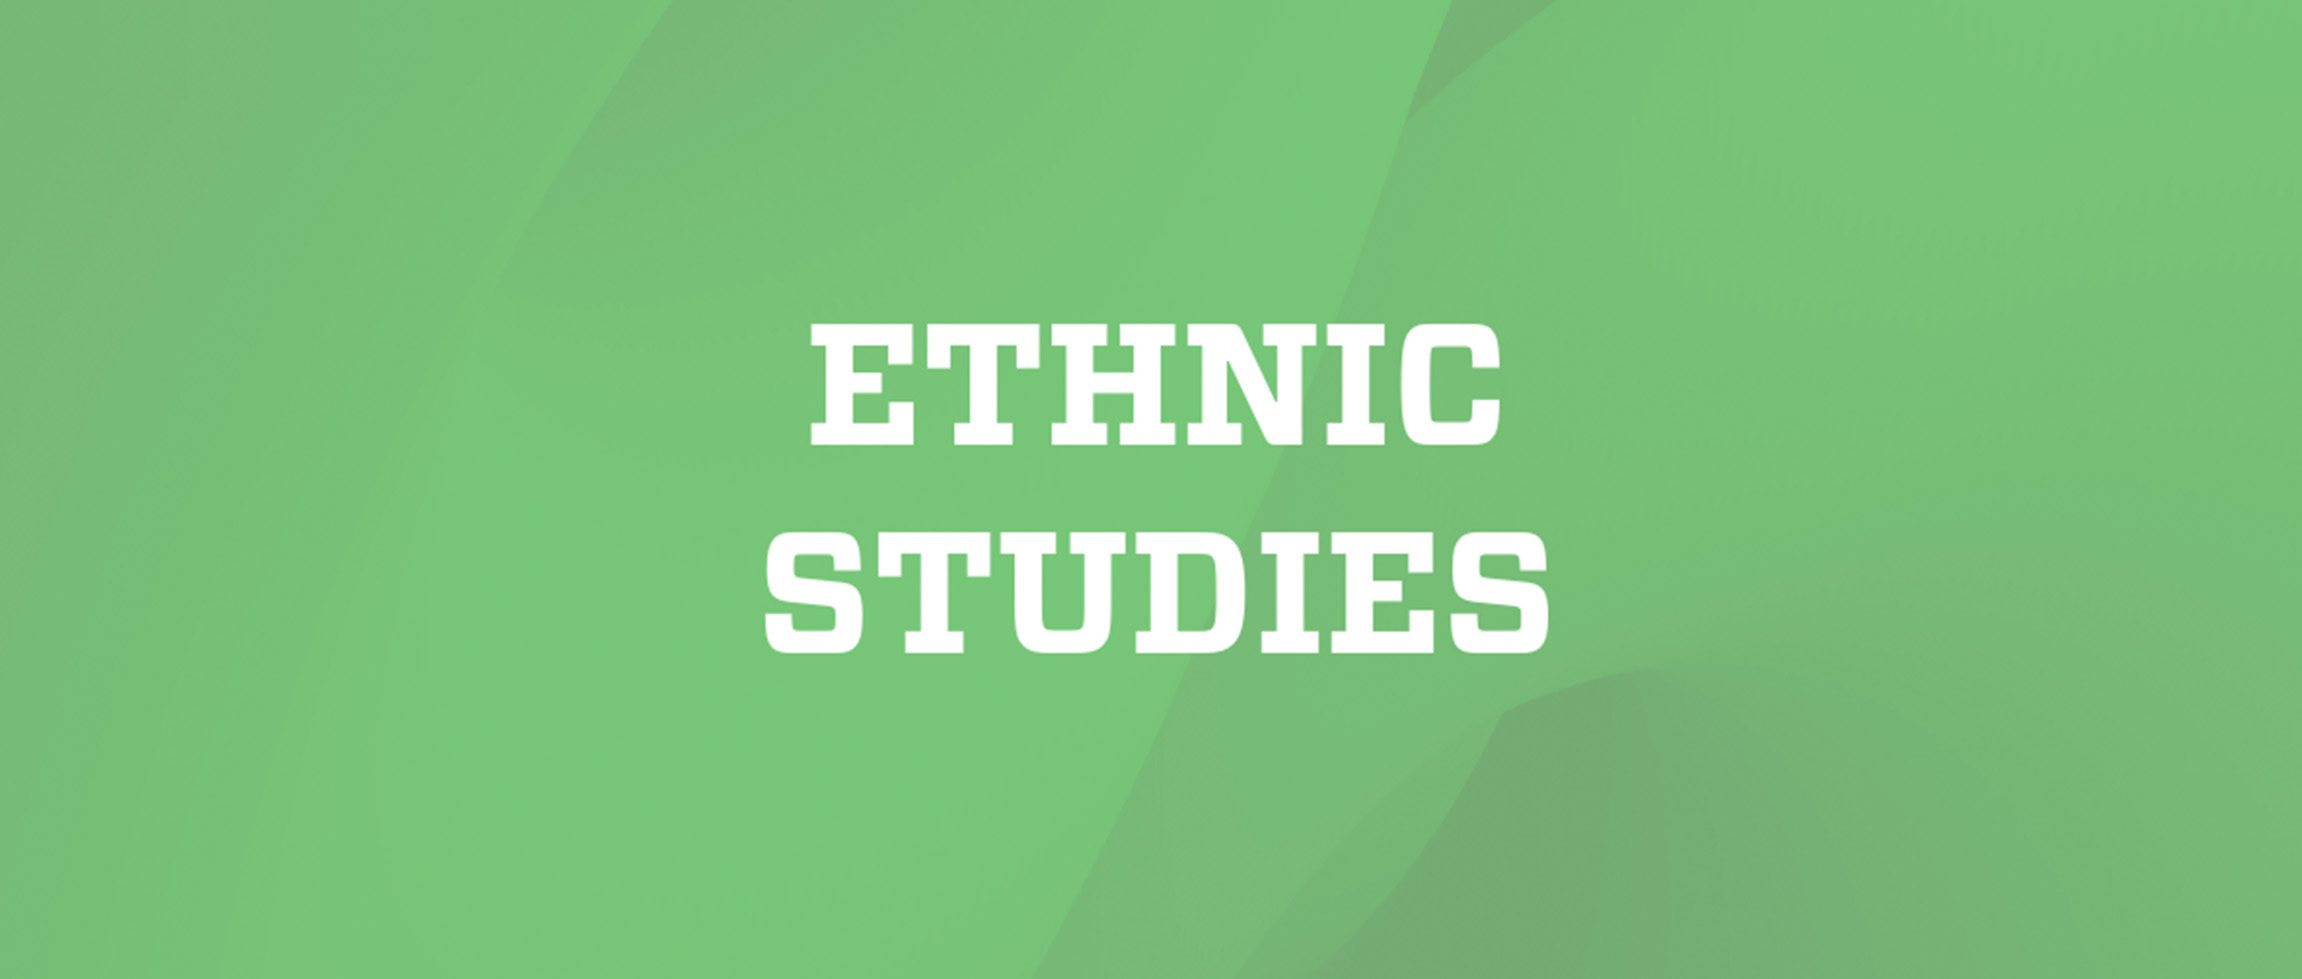 Ethnic Studies